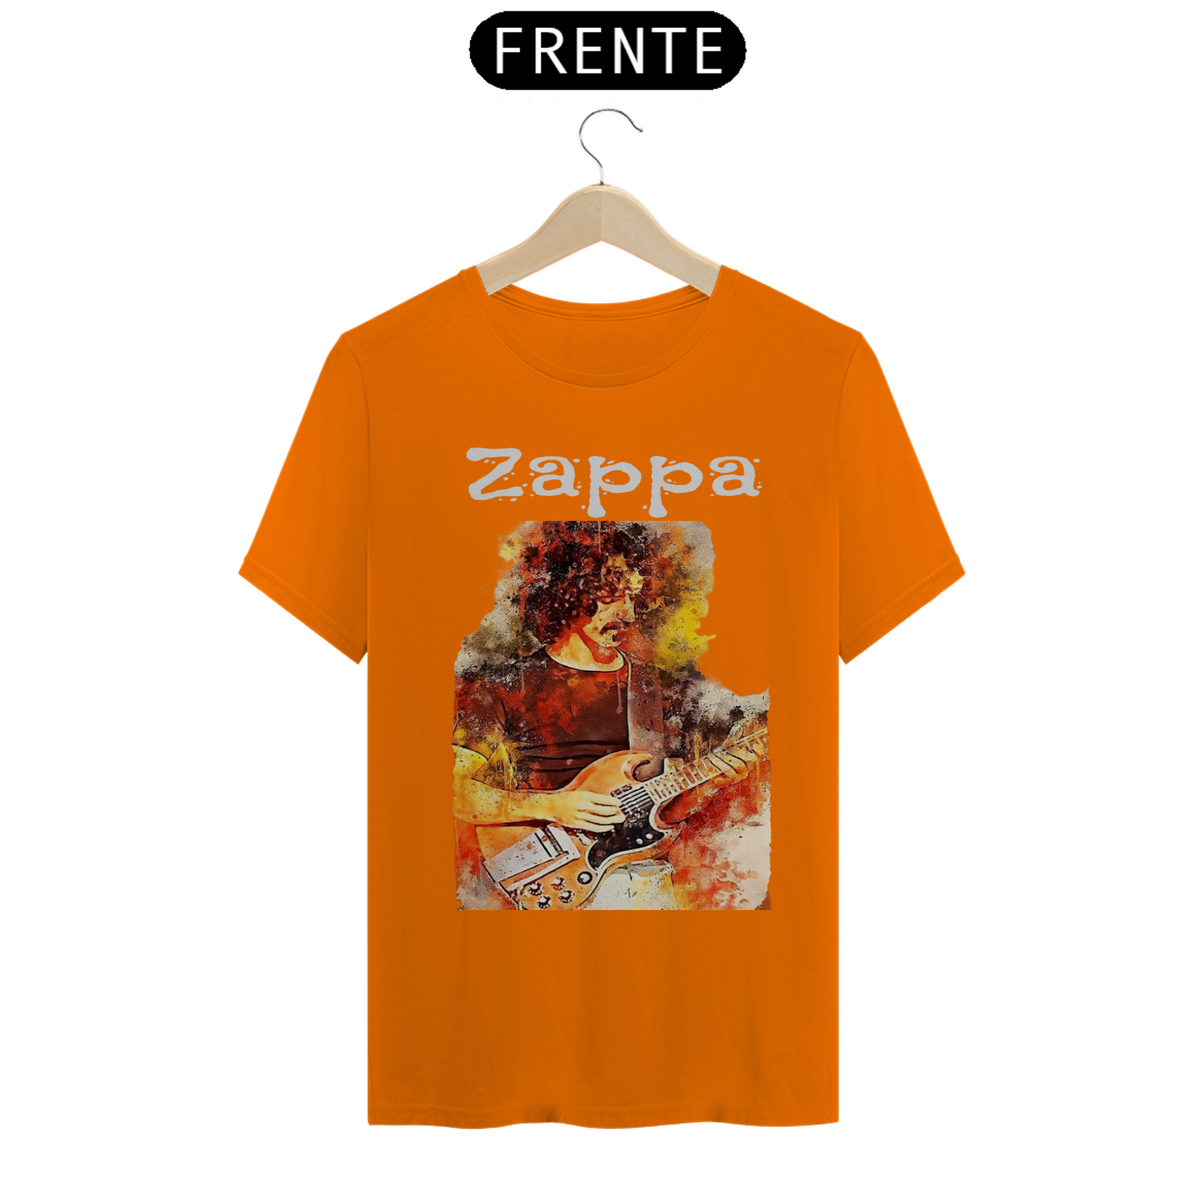 Nome do produto: Zappa